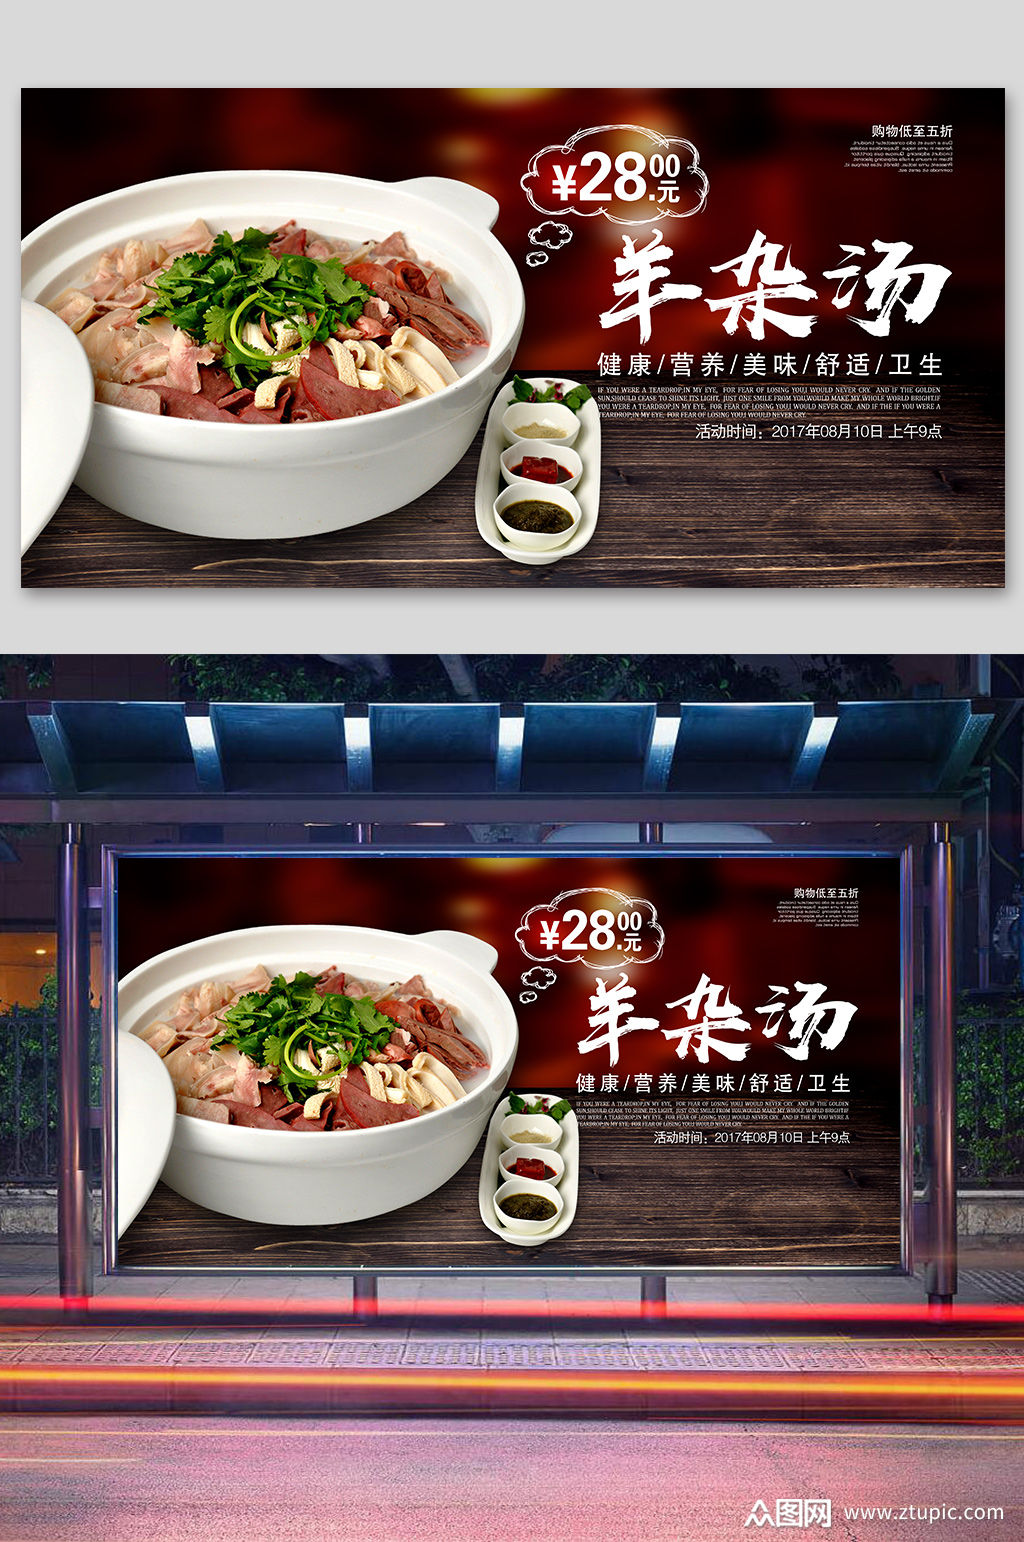 羊杂汤美食宣传展板素材免费下载,本作品是由紫妍上传的原创平面广告